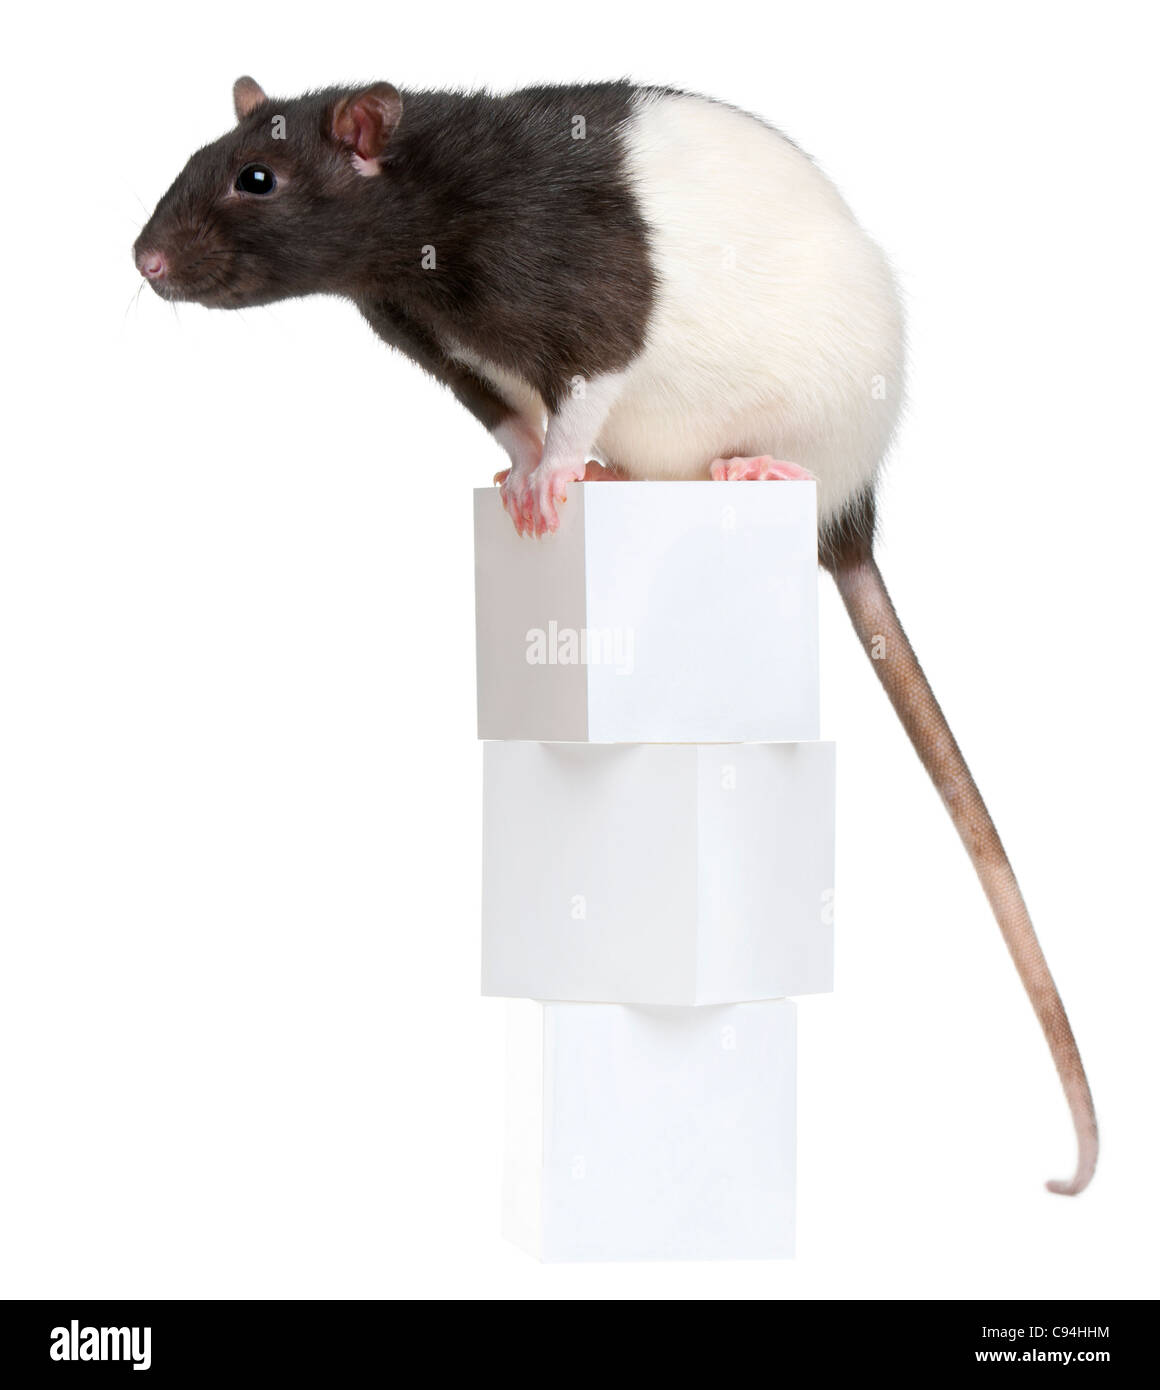 Voglia di ratto, 1 anno di età, seduti su scatole di fronte a uno sfondo bianco Foto Stock